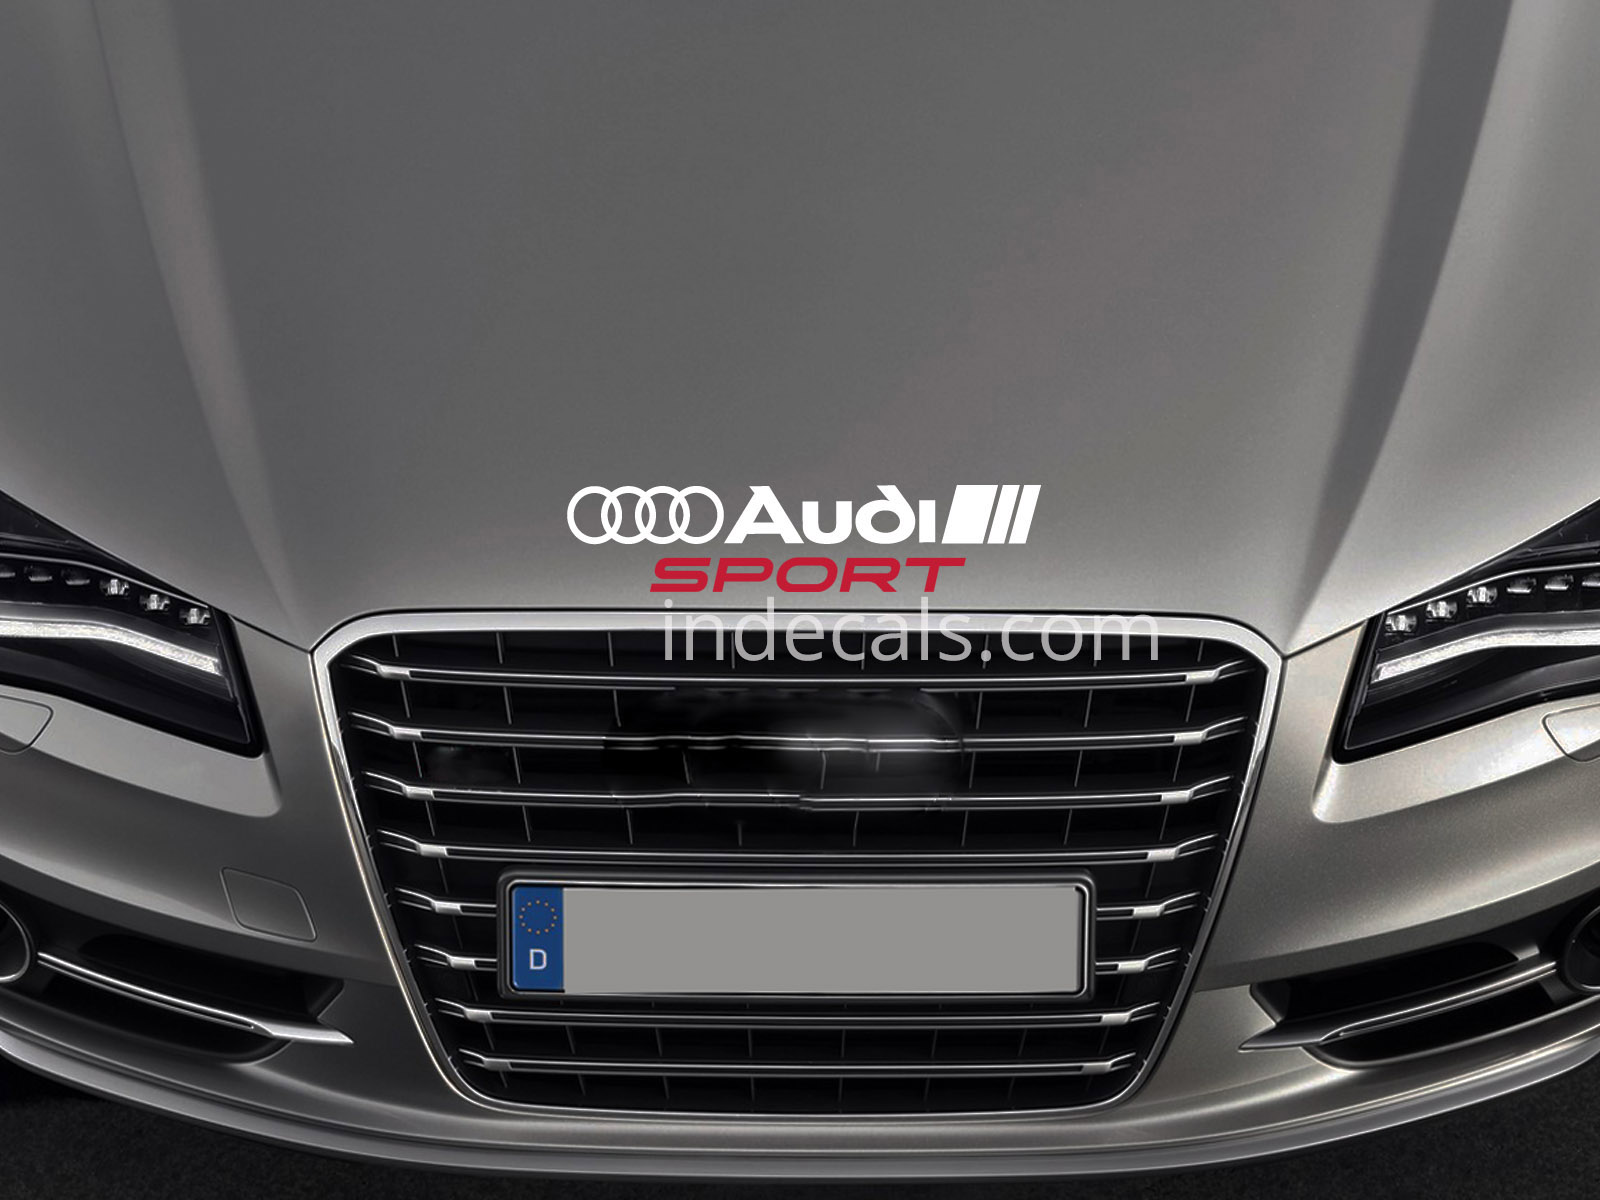 1 x Audi Sport Sticker for Bonnet - White & Red